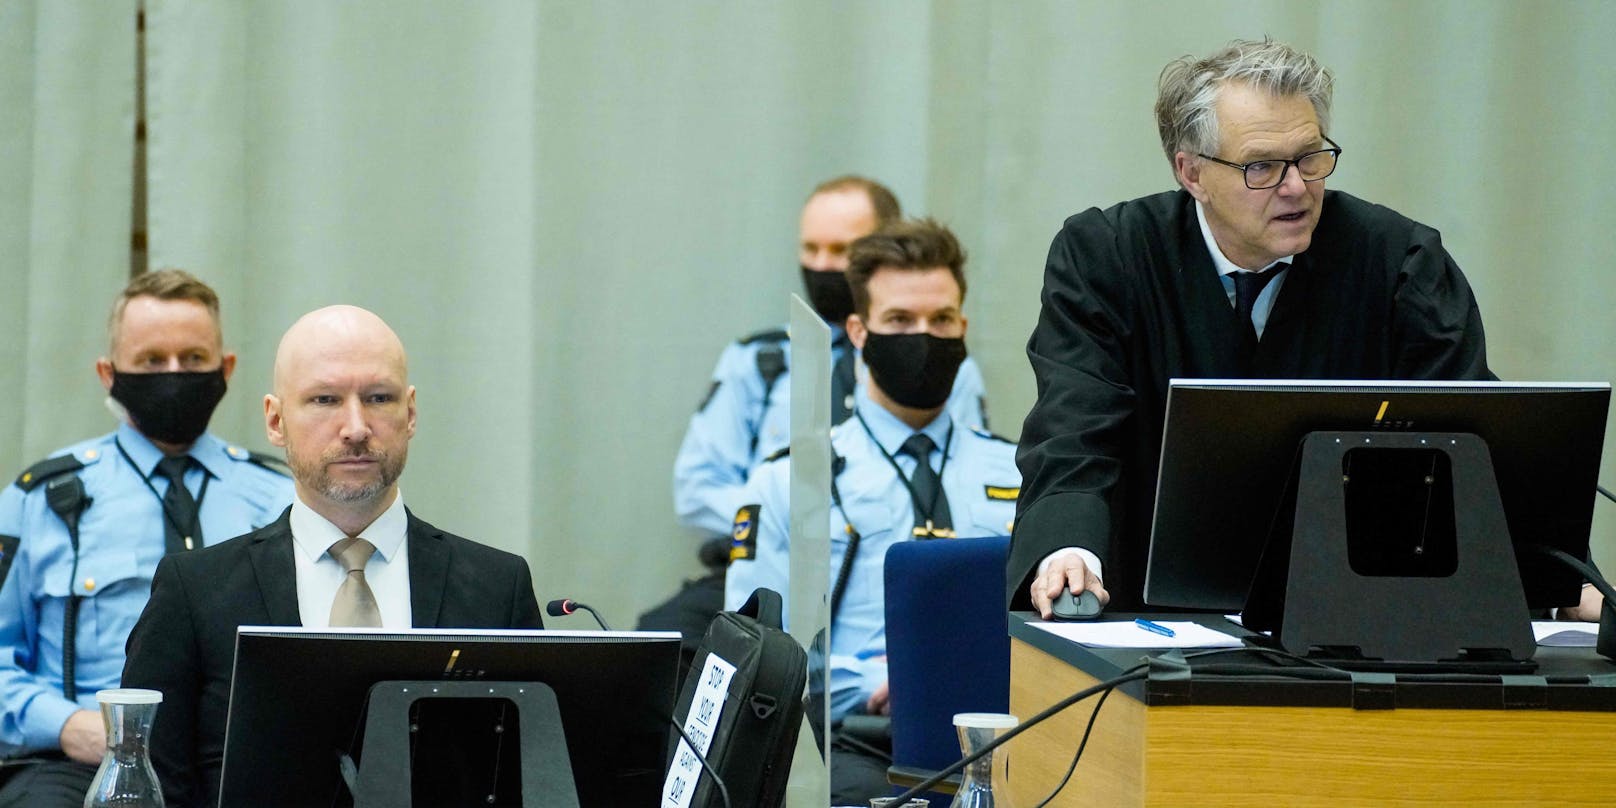 Derzeit wird über den Freilassungsantrag des verurteilten Rechtsterroristen Anders Breivik verhandelt.